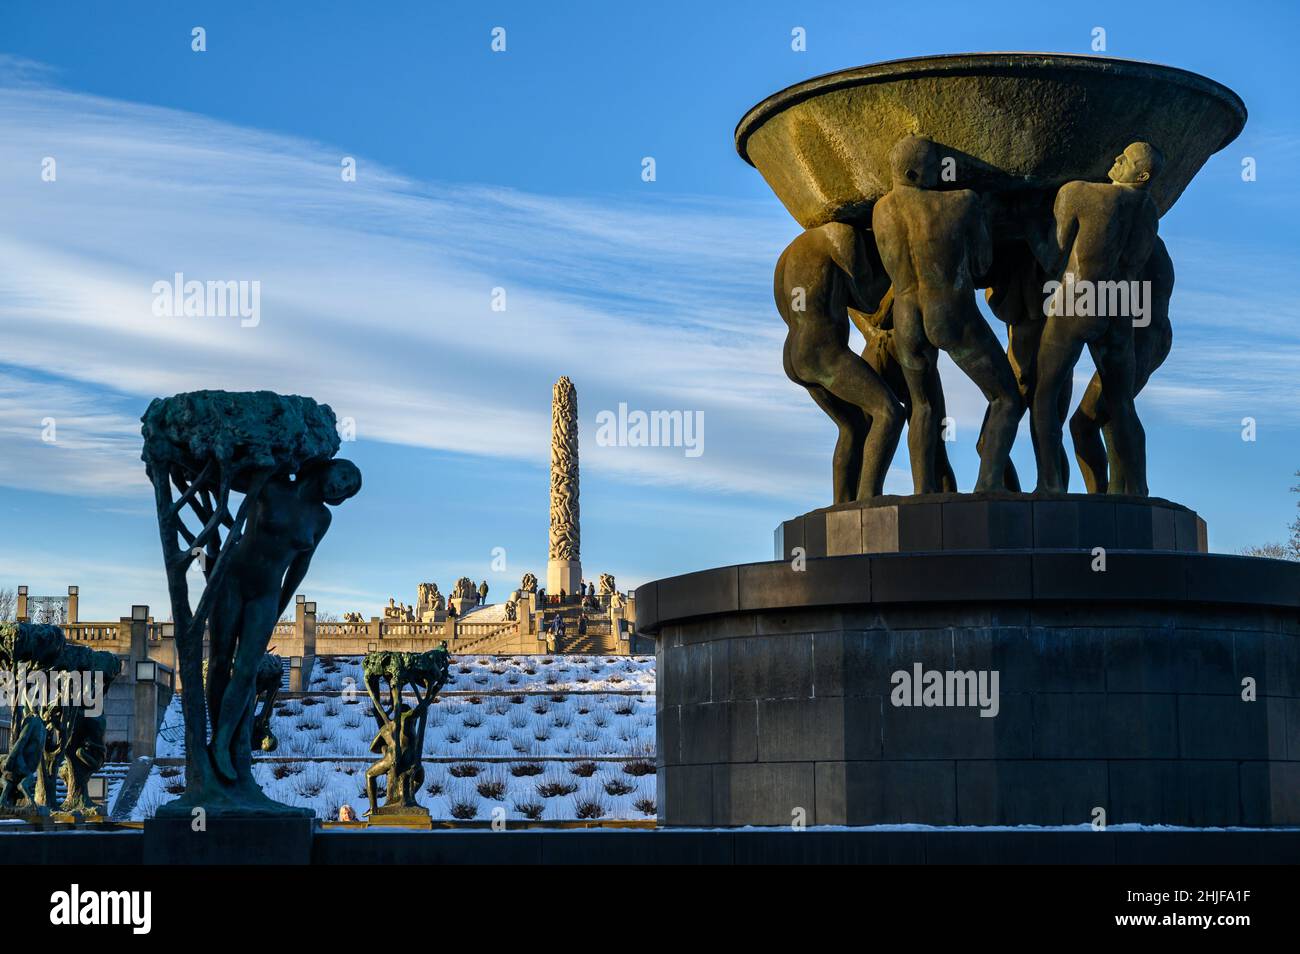 Scultura di fontana vuota portata da sei uomini forti e il Monolith sullo sfondo nel Parco delle sculture di Vigeland, Frognerparken, Oslo, Norvegia. Foto Stock